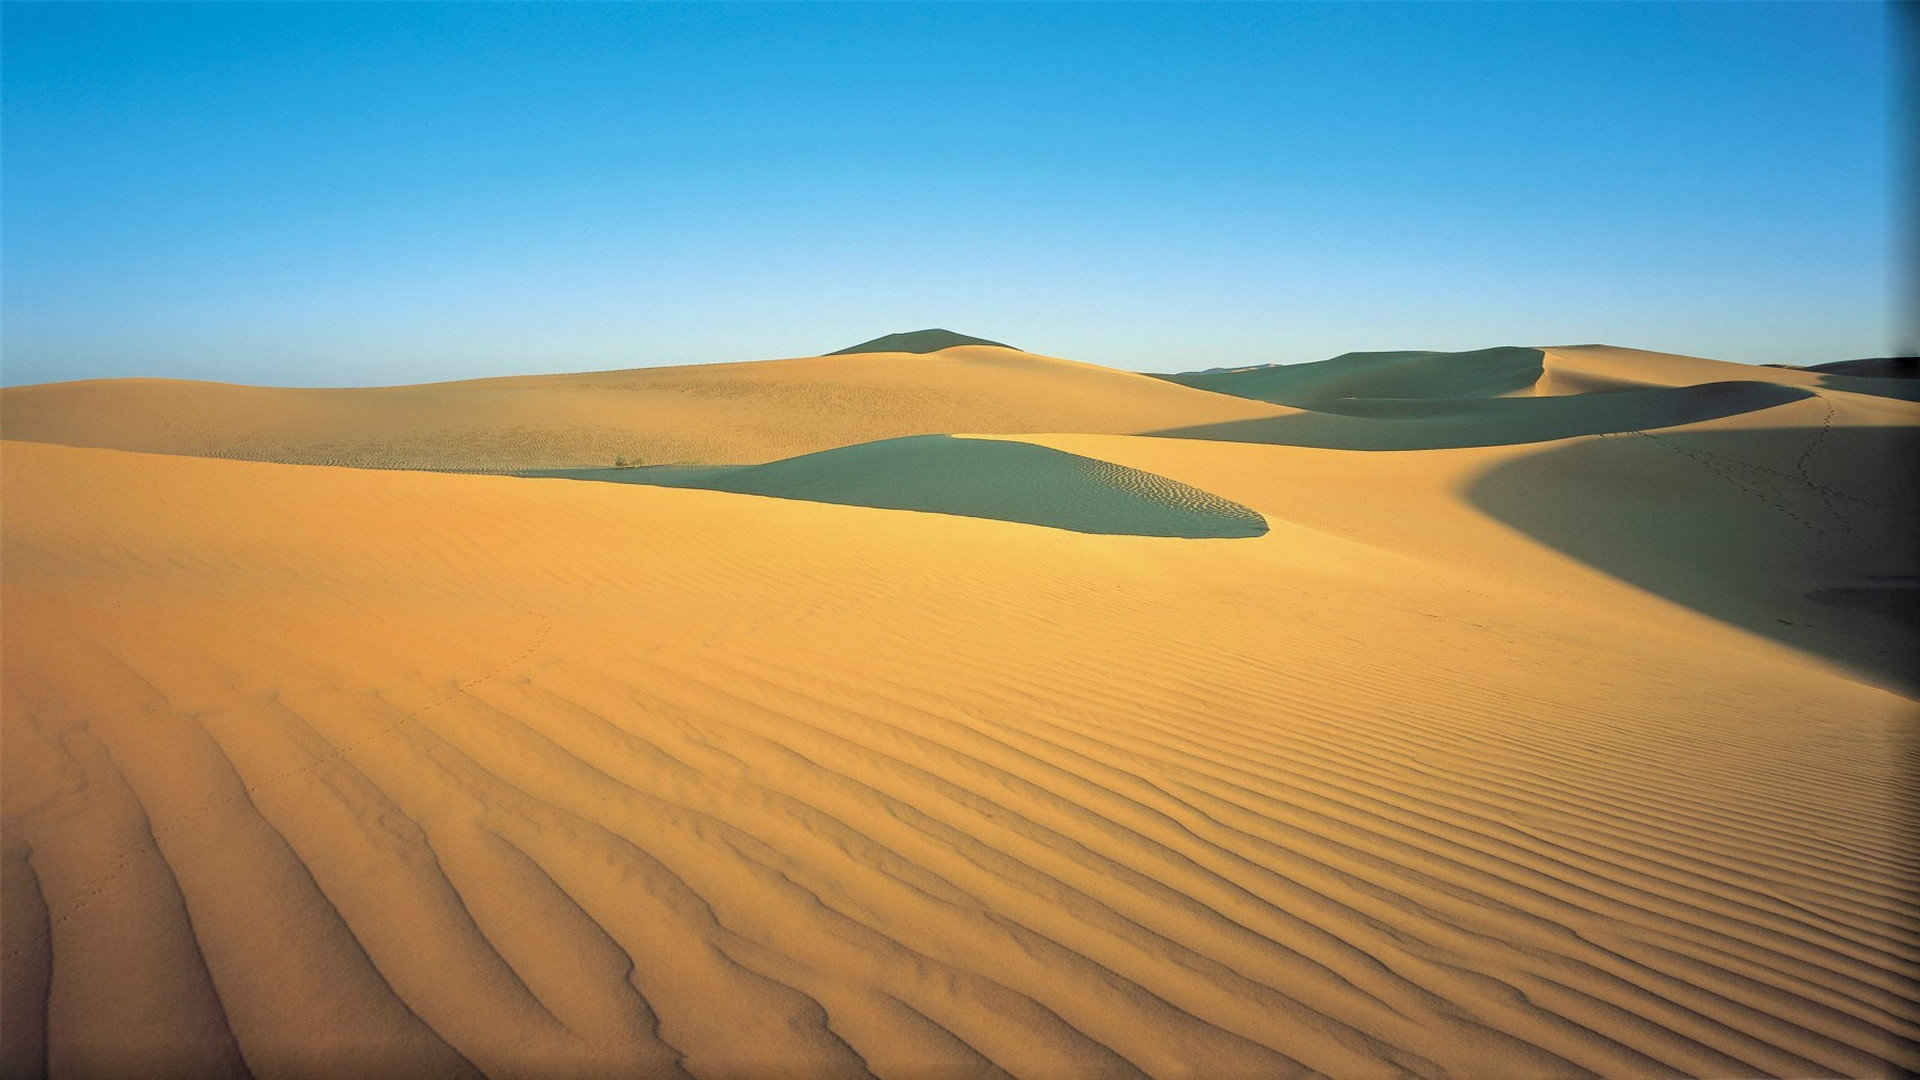 撒哈拉沙漠风景背景高清图片大全-